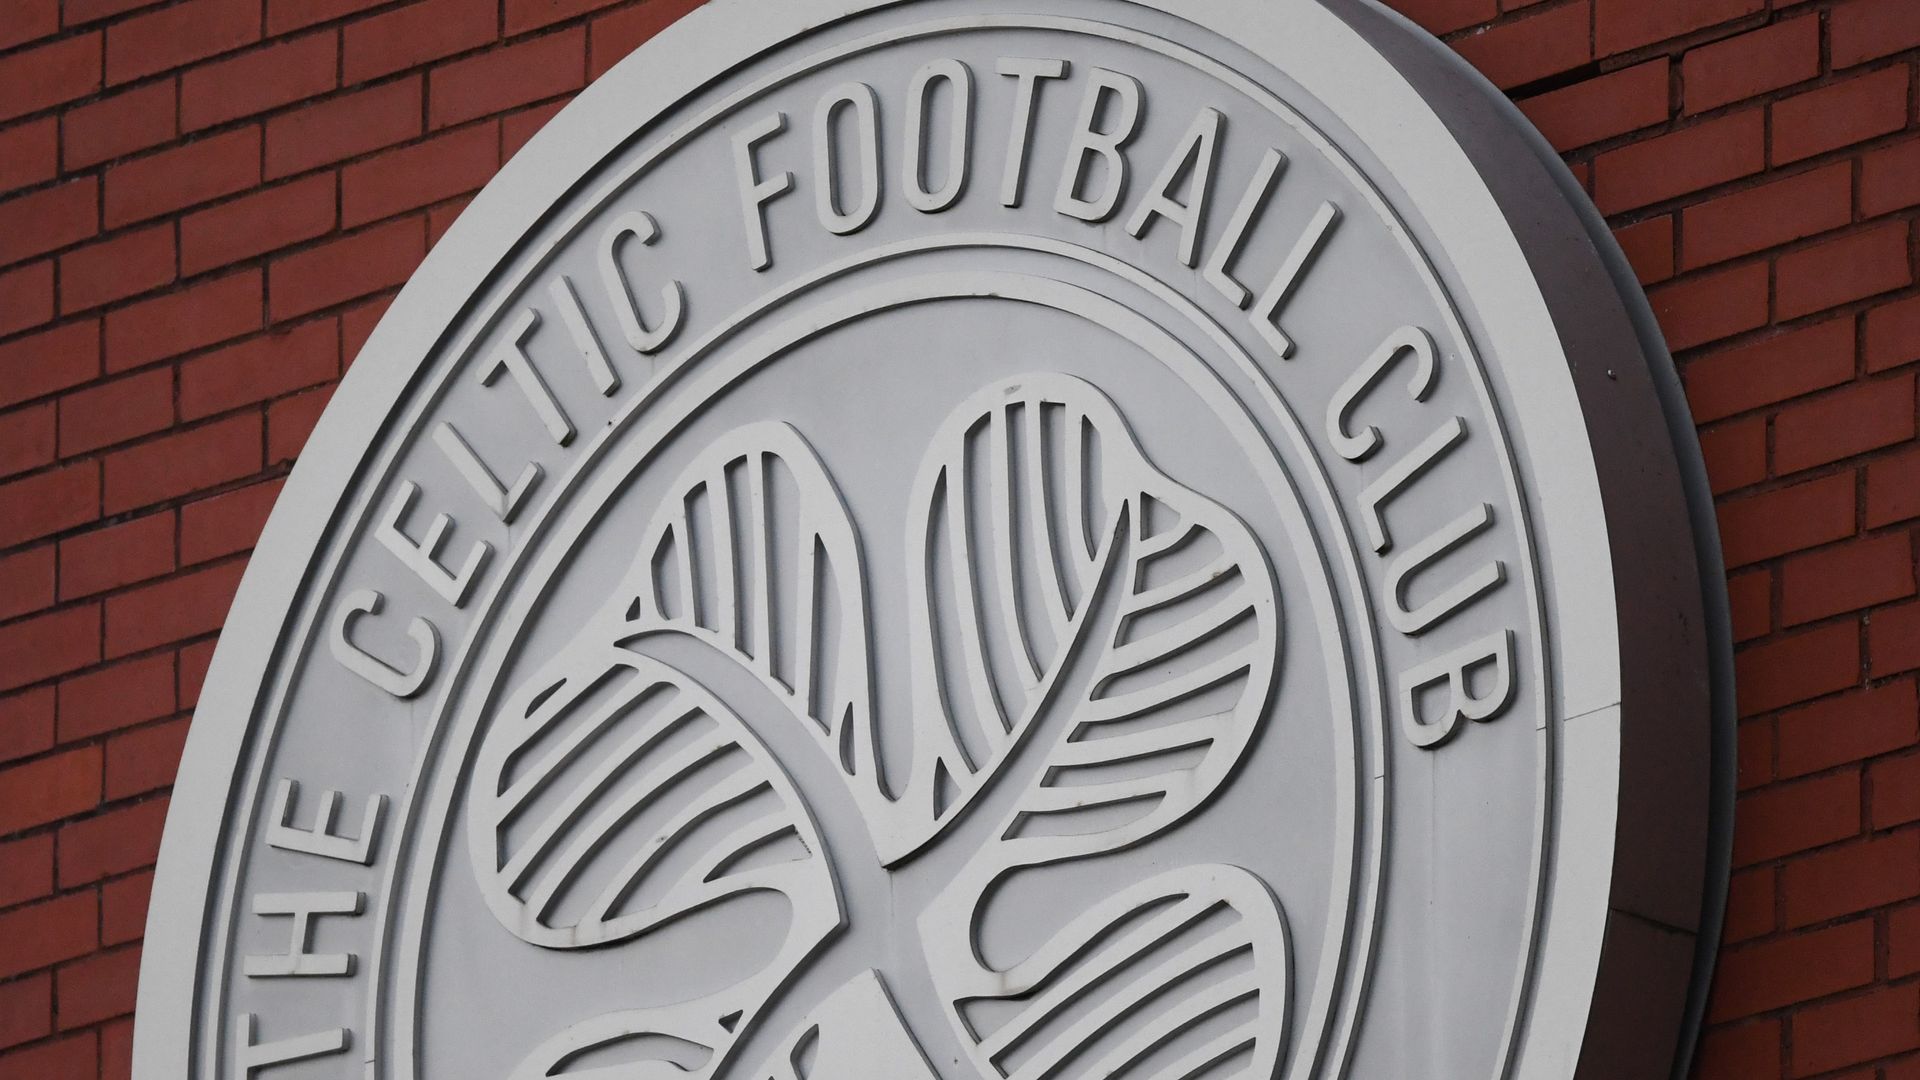 Compensation case against Celtic over historical sex abuse allegations adjourned